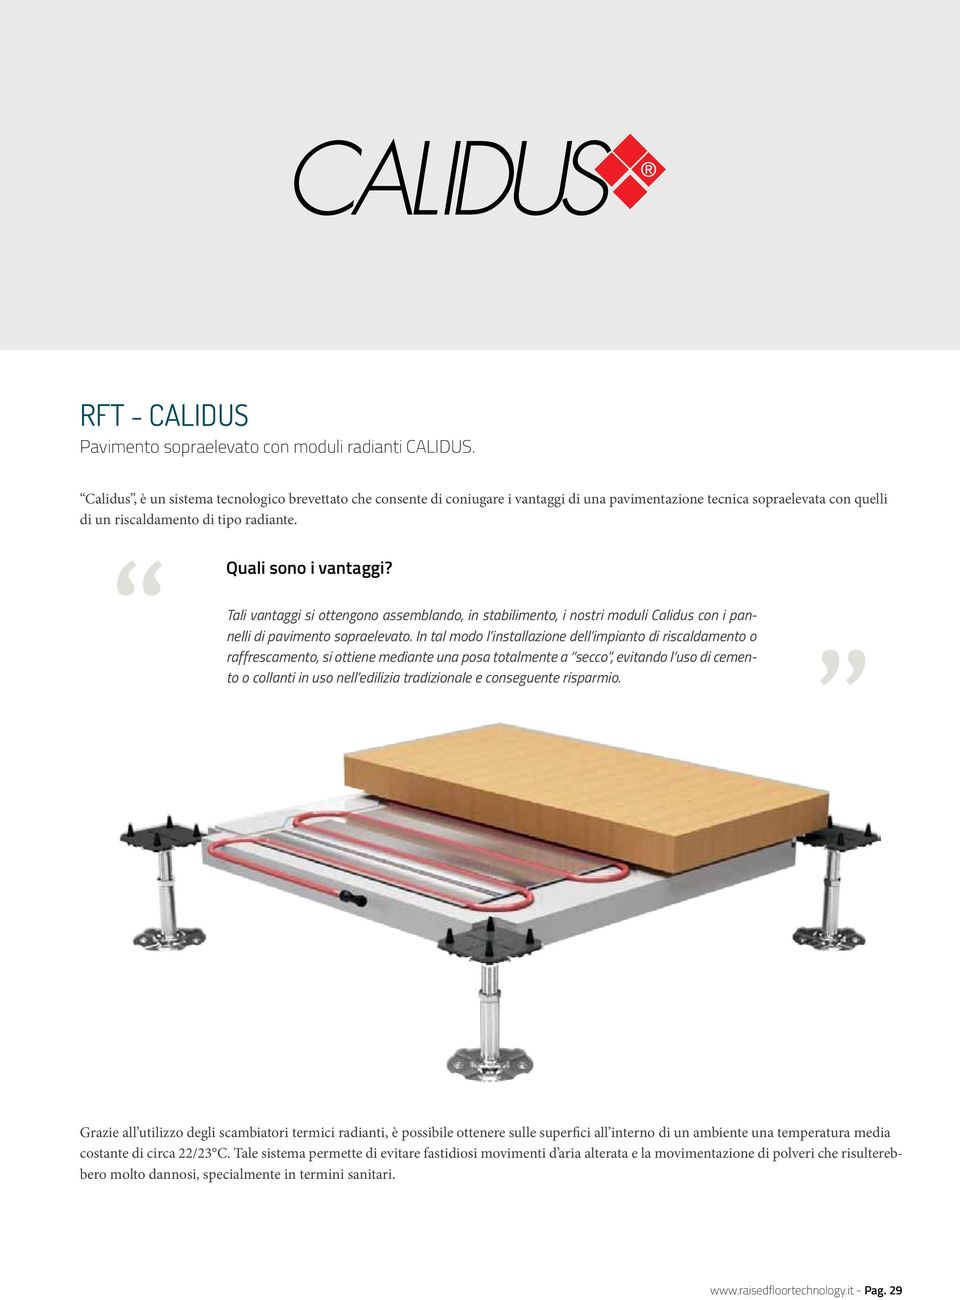 Tali vantaggi si ottengono assemblando, in stabilimento, i nostri moduli Calidus con i pannelli di pavimento sopraelevato.